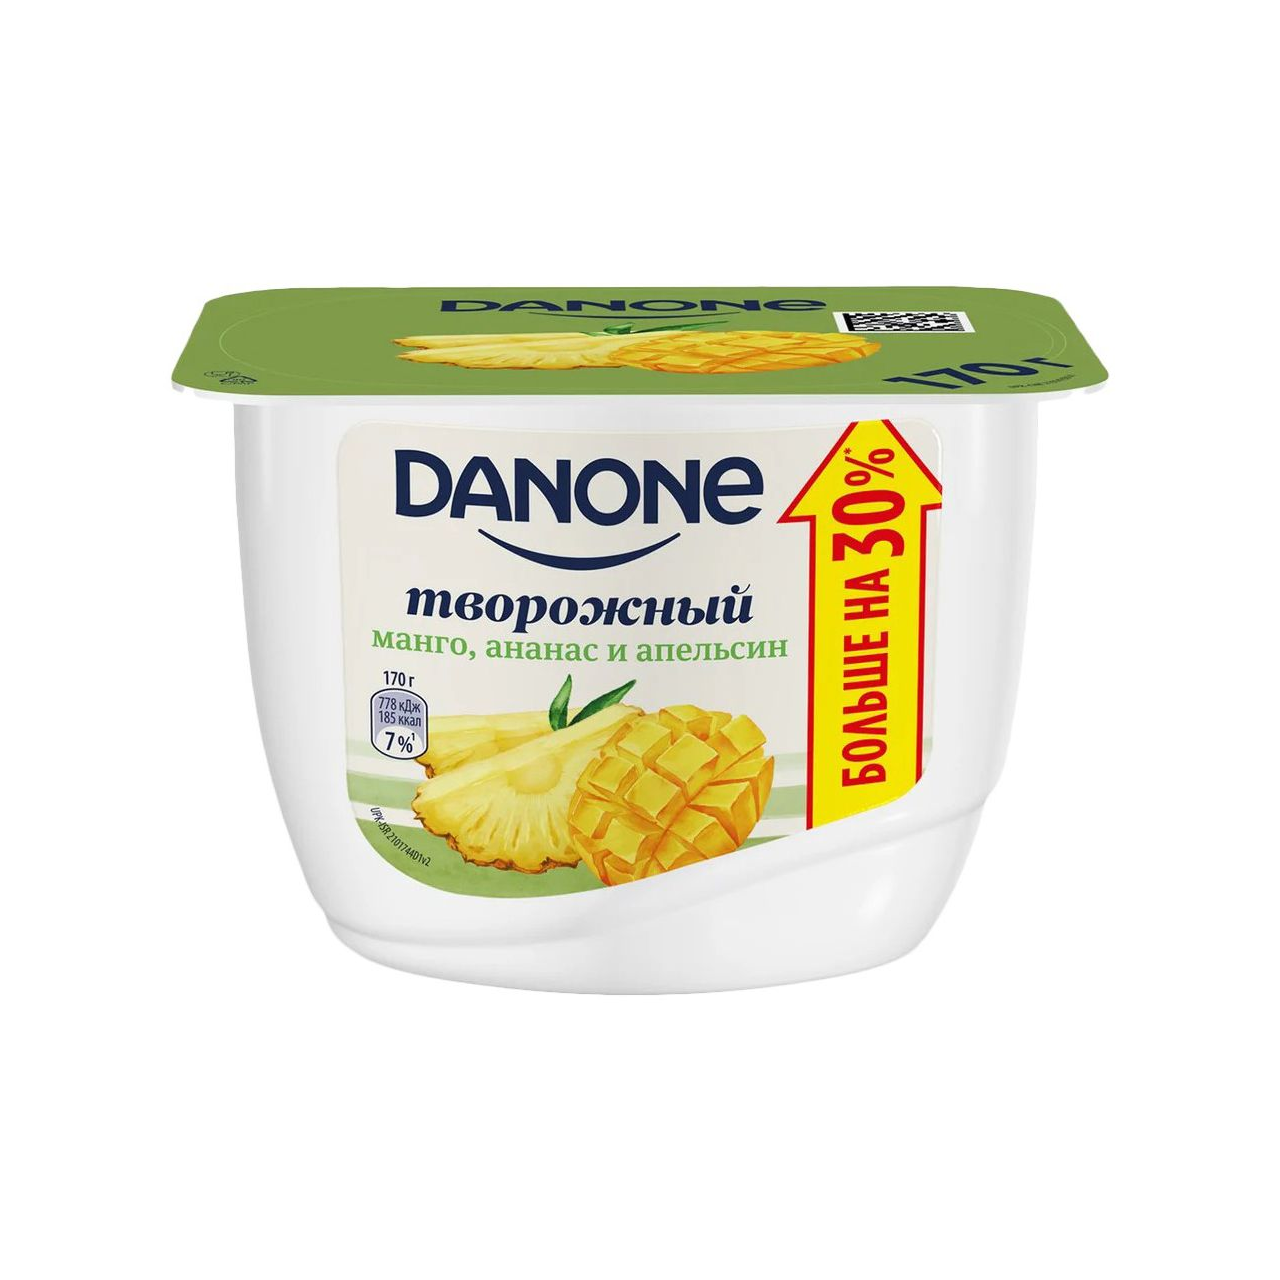 Продукт творожный Данон 3,6% 170 г манго/ананас/апельсин